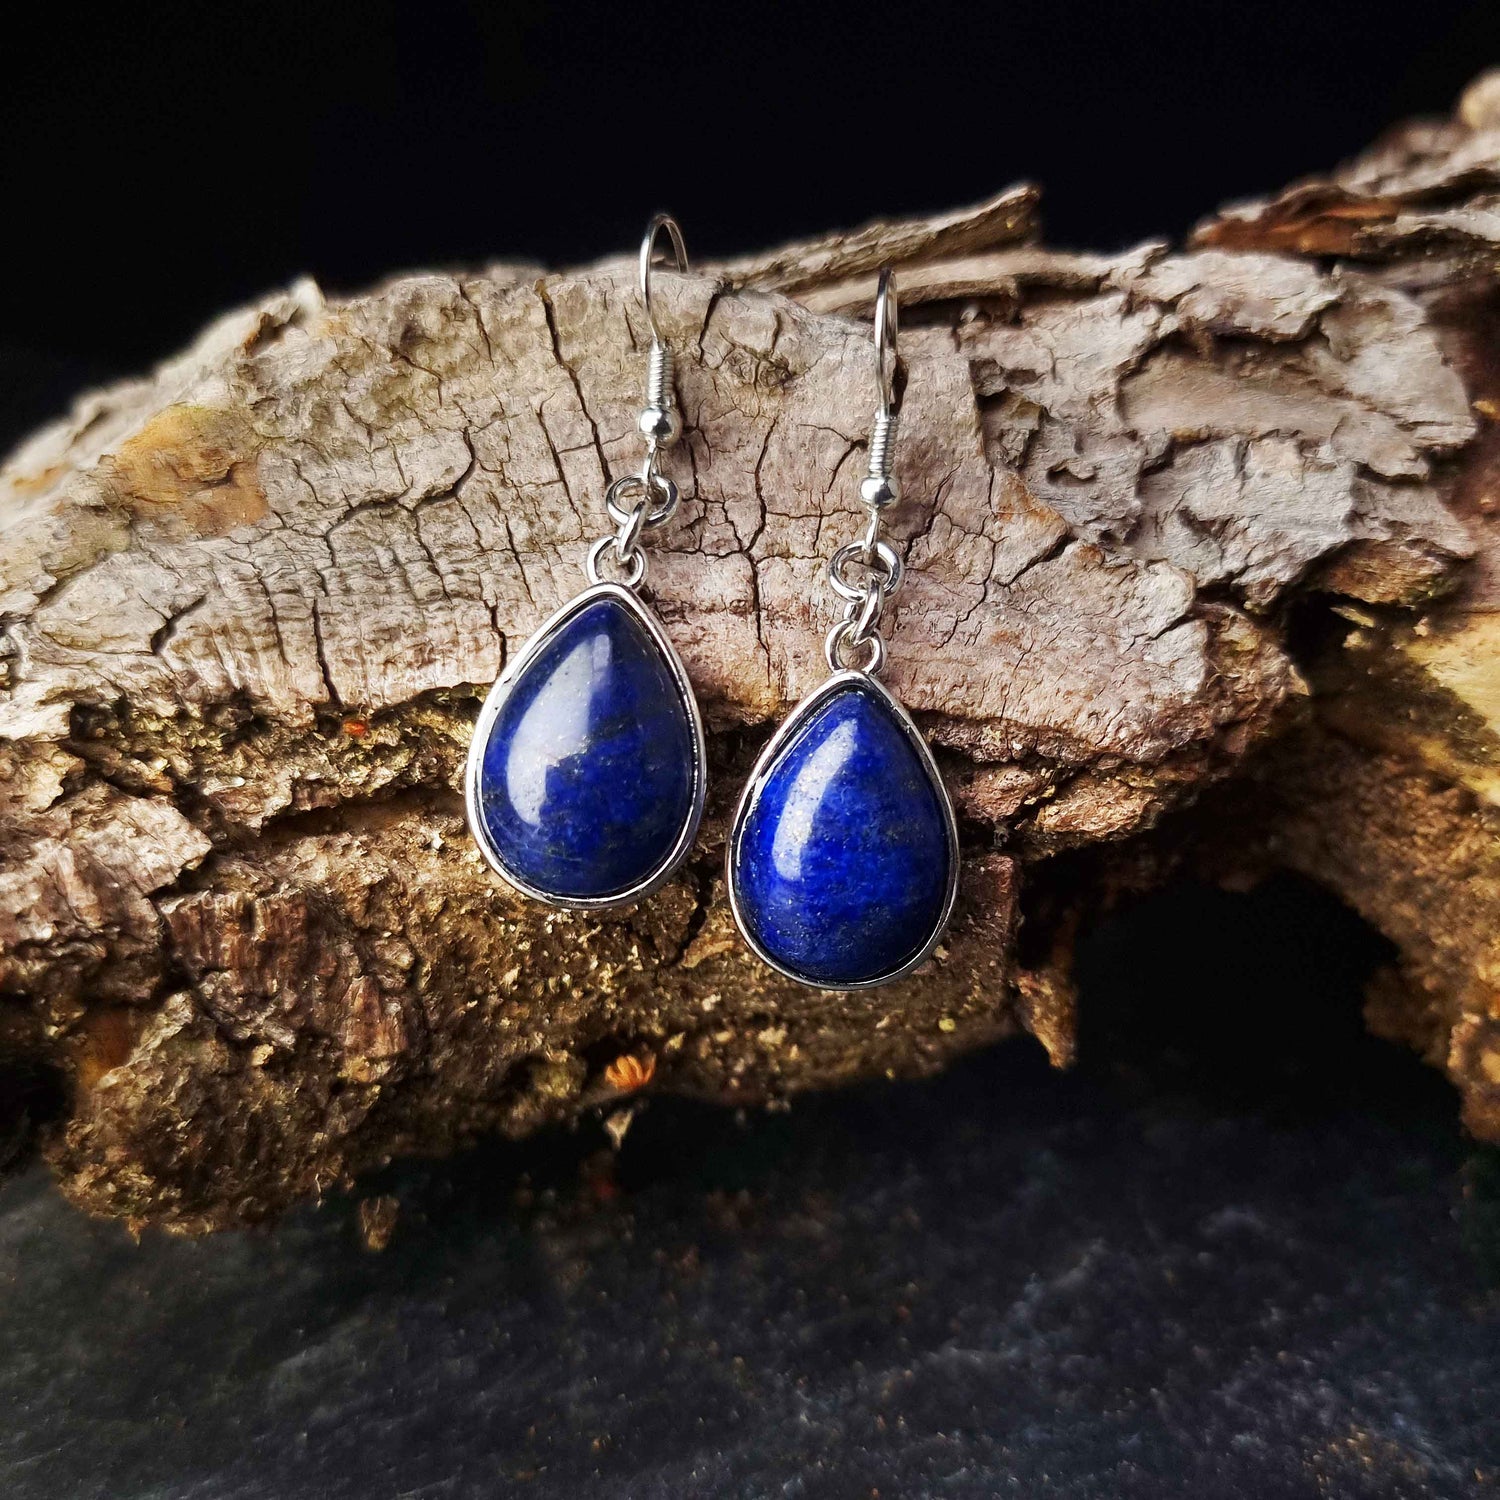 Blauwe edelstenen oorbellen met lapis lazuli en sterling zilver (925), vooraanzicht | Lapis Lazuli Teardrop